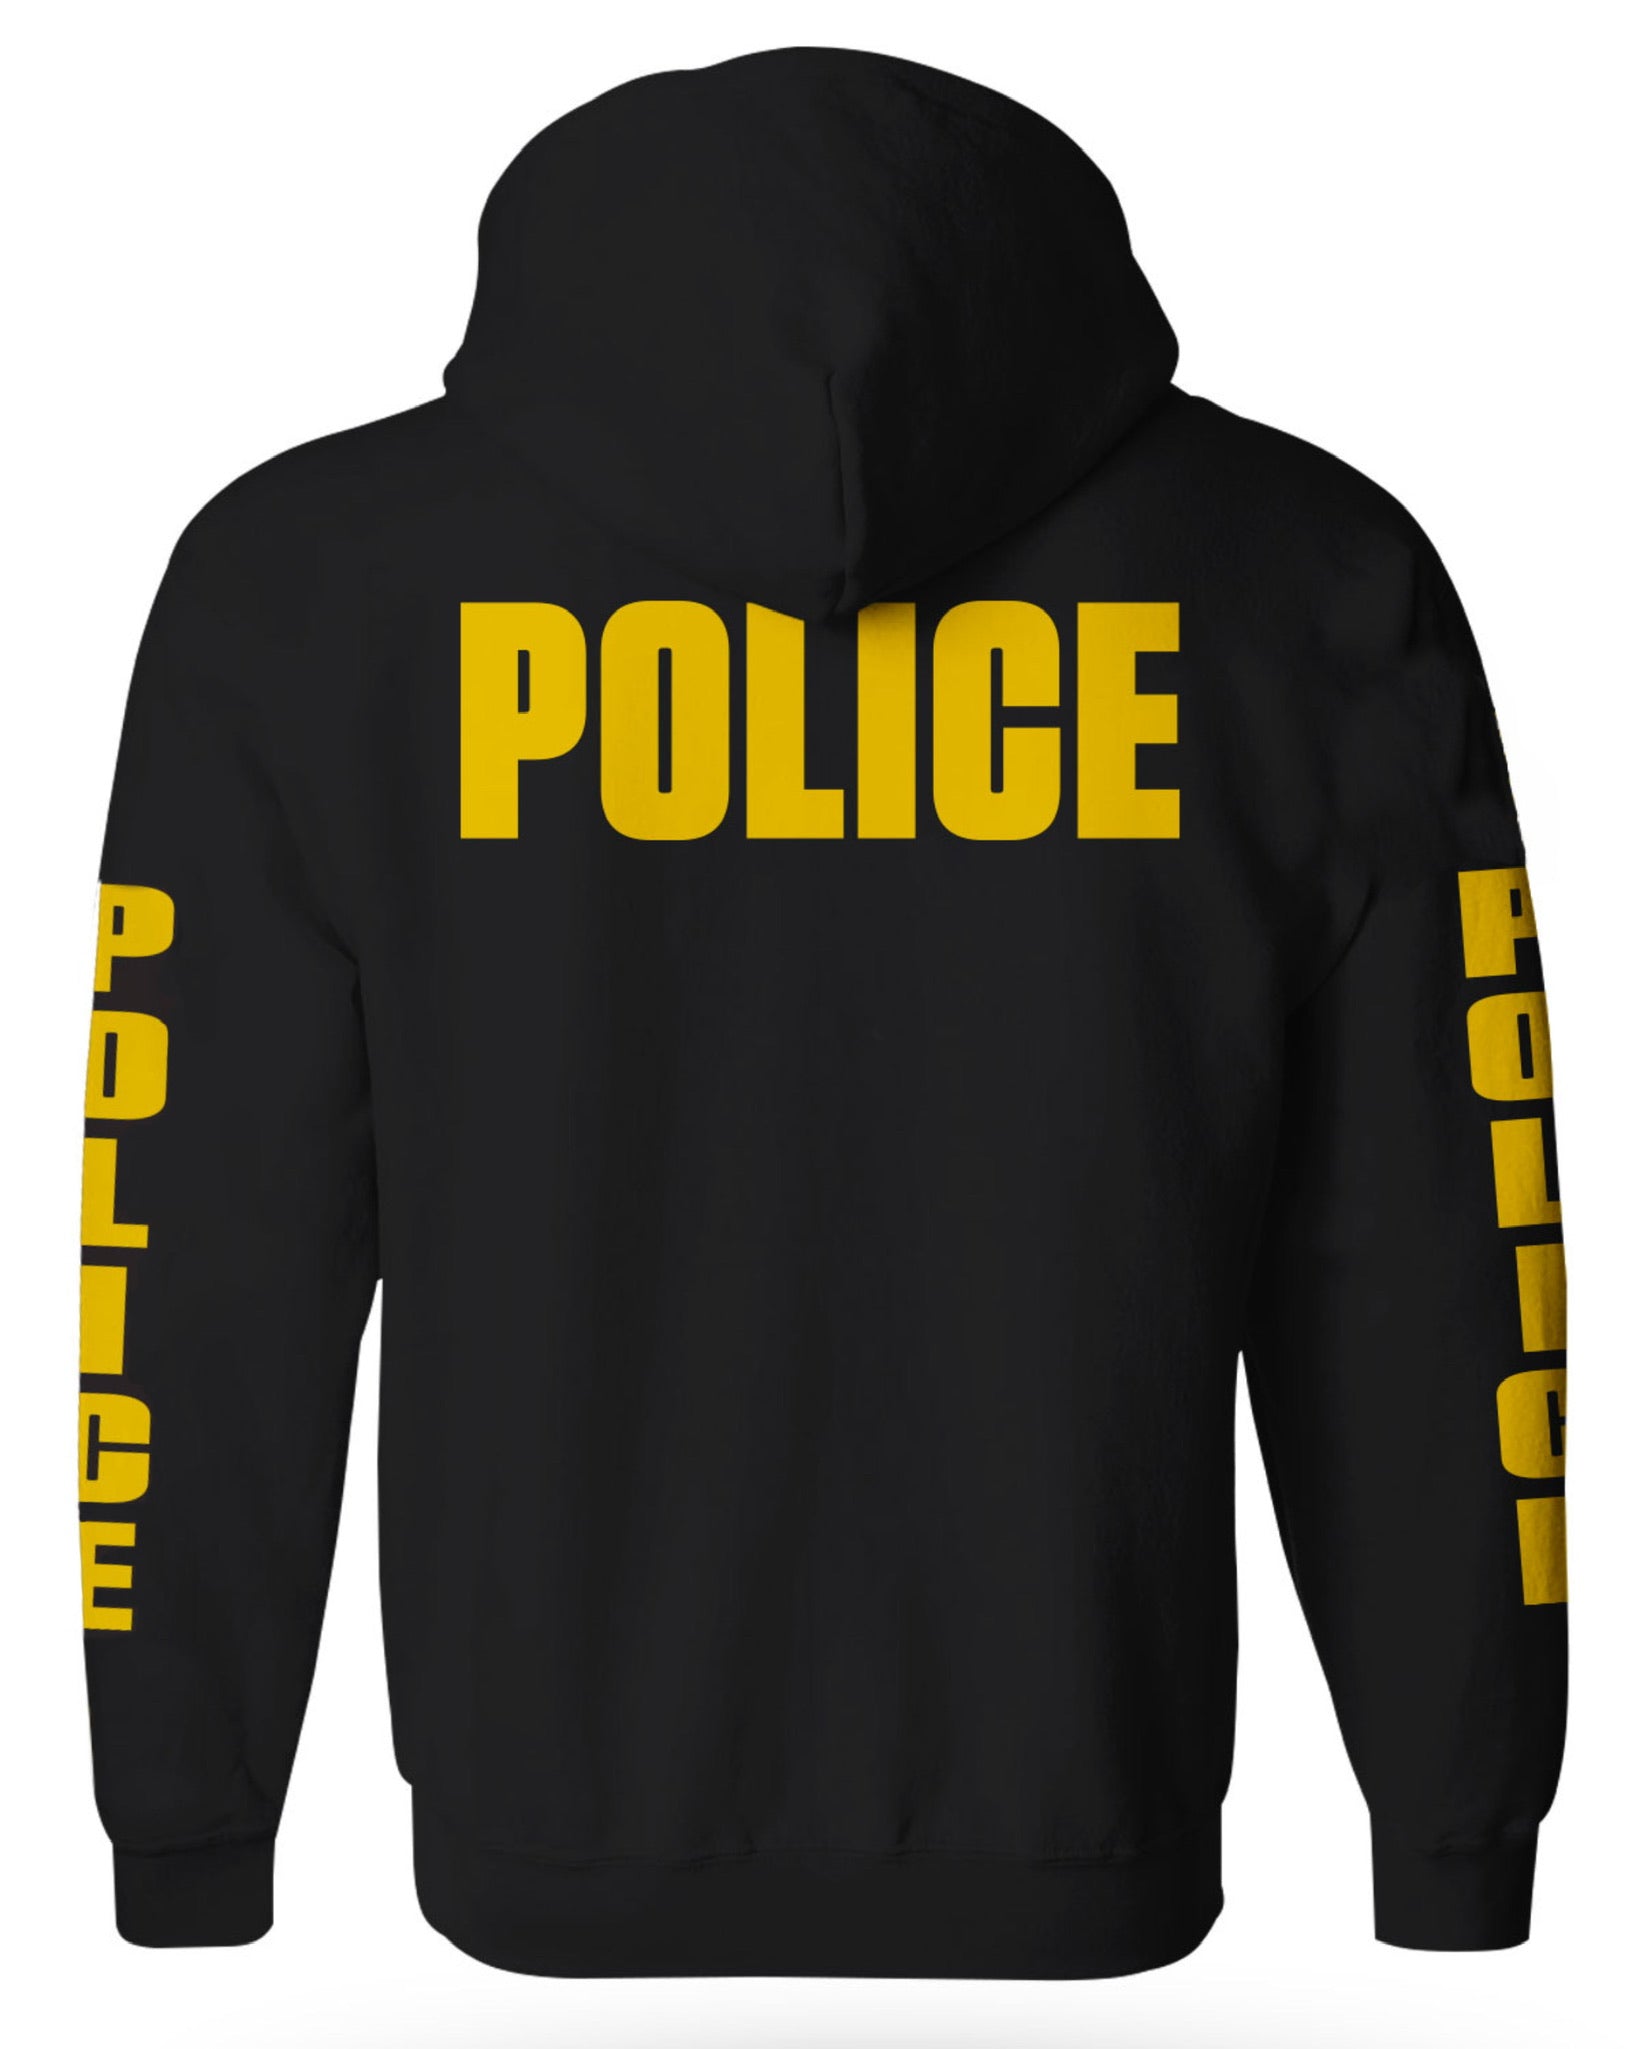 Miramar Police Department Zip Up hoodies